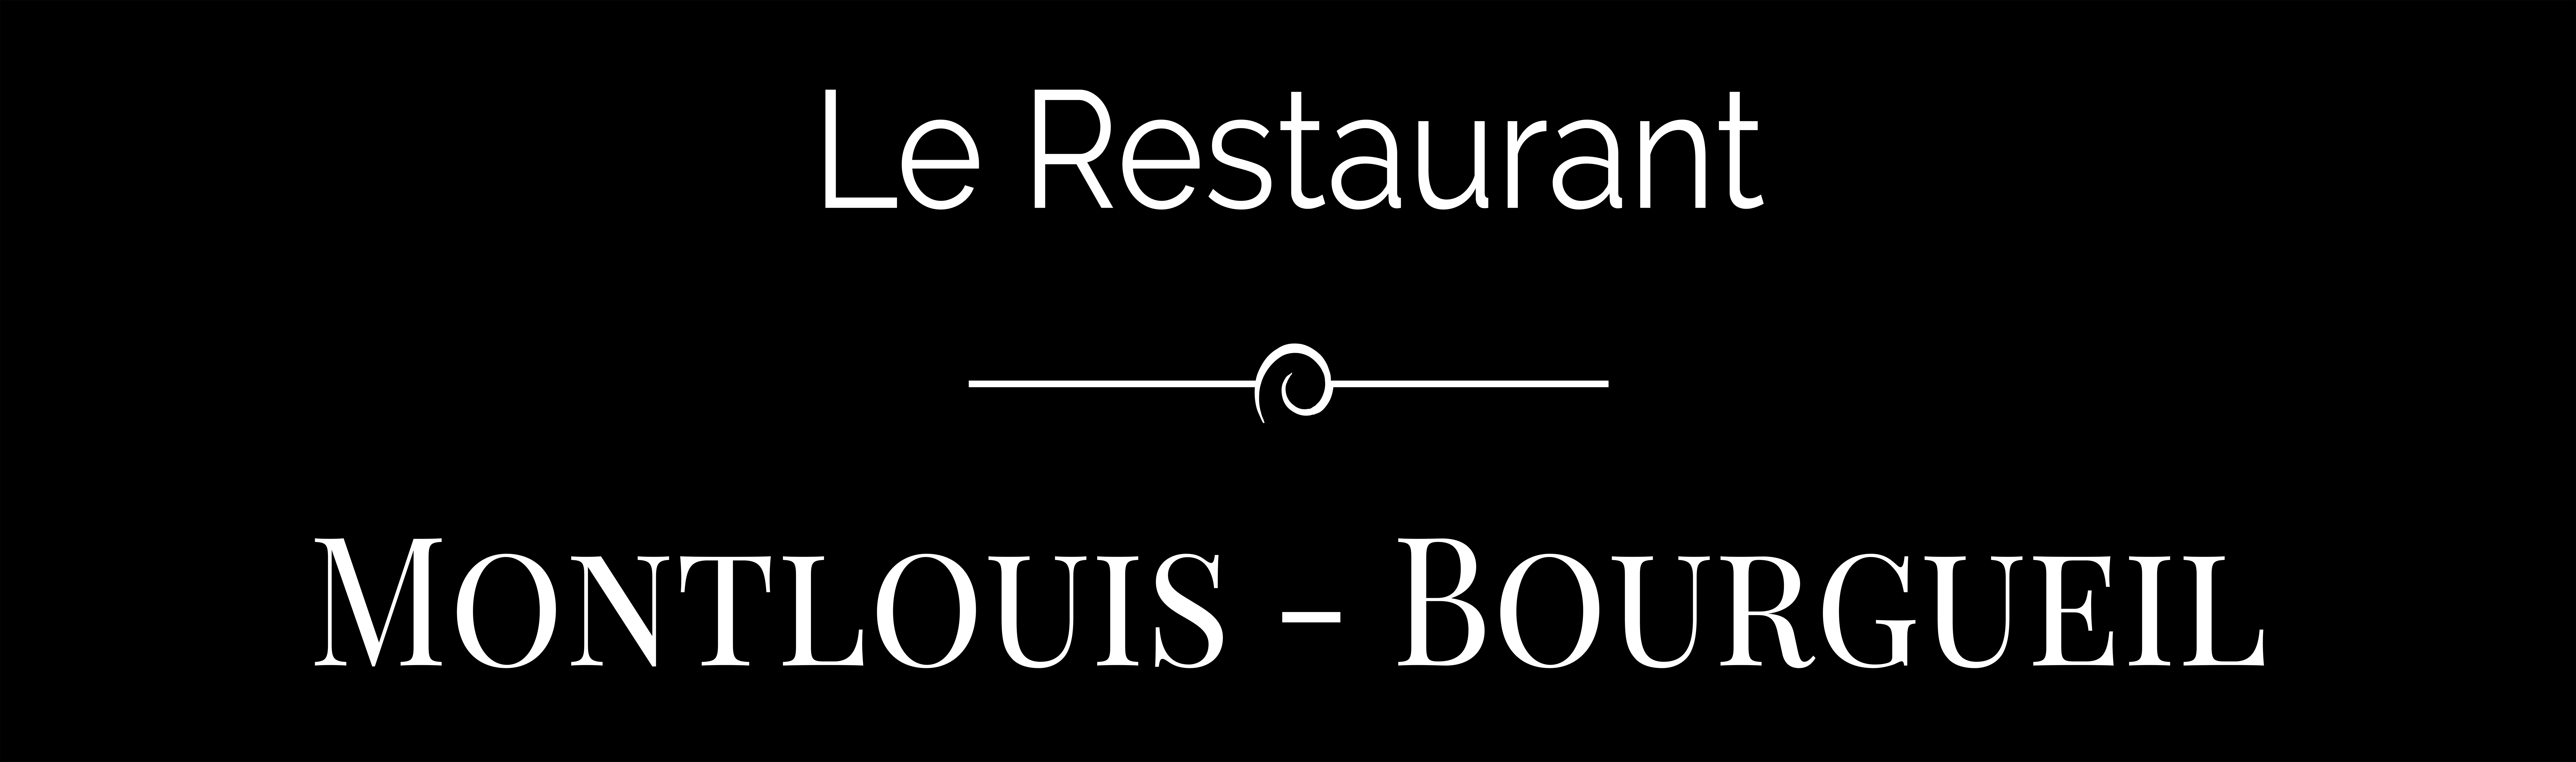 Logo Montlouis - Bourgueil